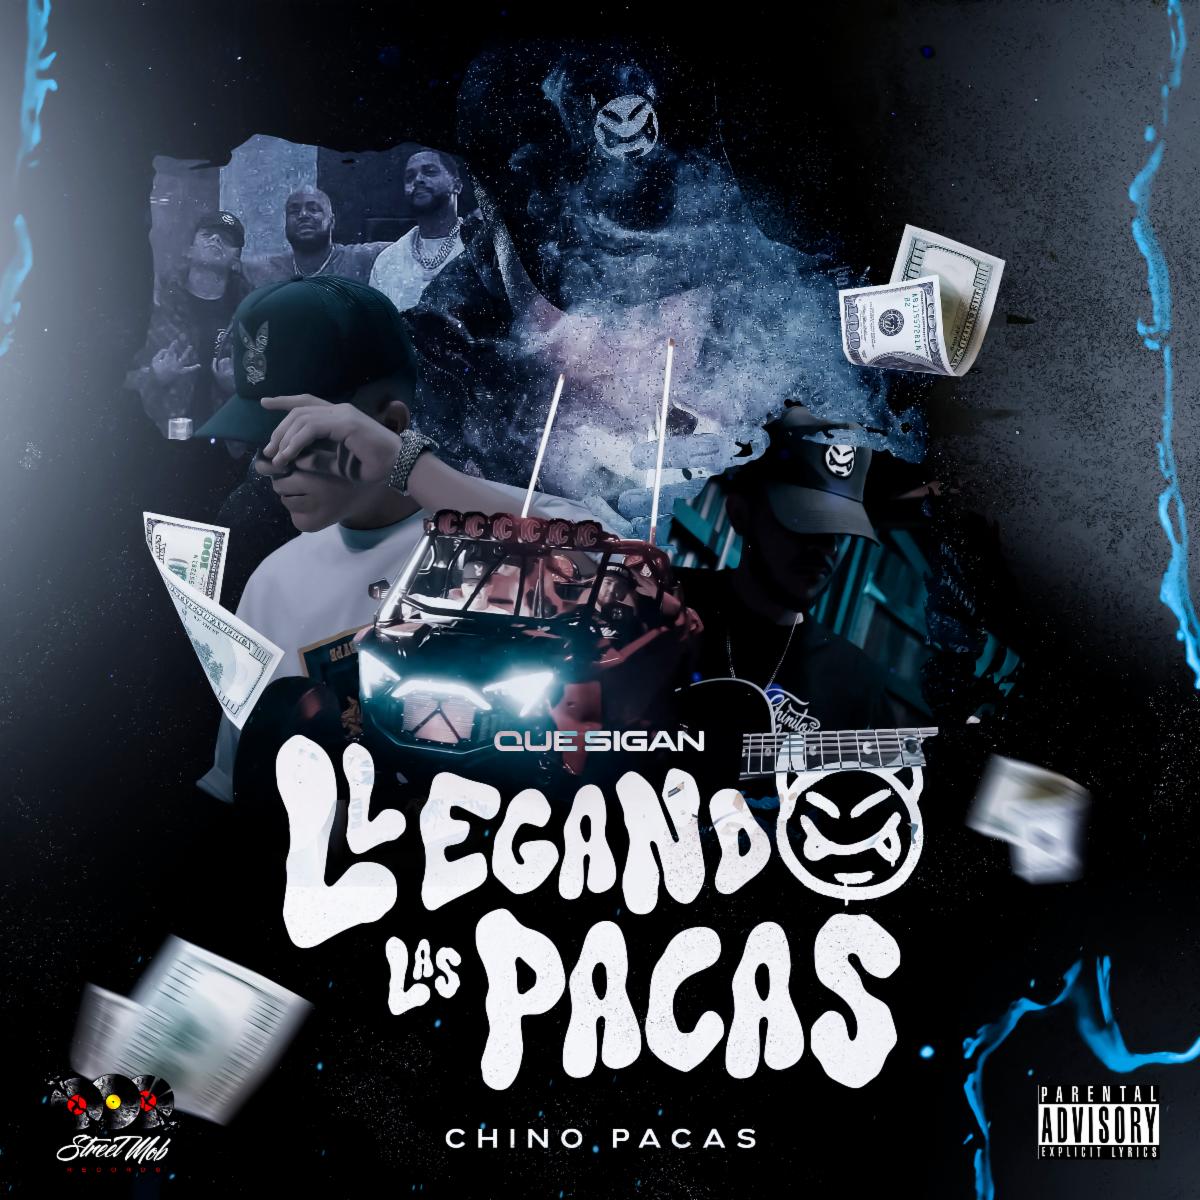 CHINO PACAS  lanza su nuevo sencillo “Que Sigan Llegando Las Pacas”